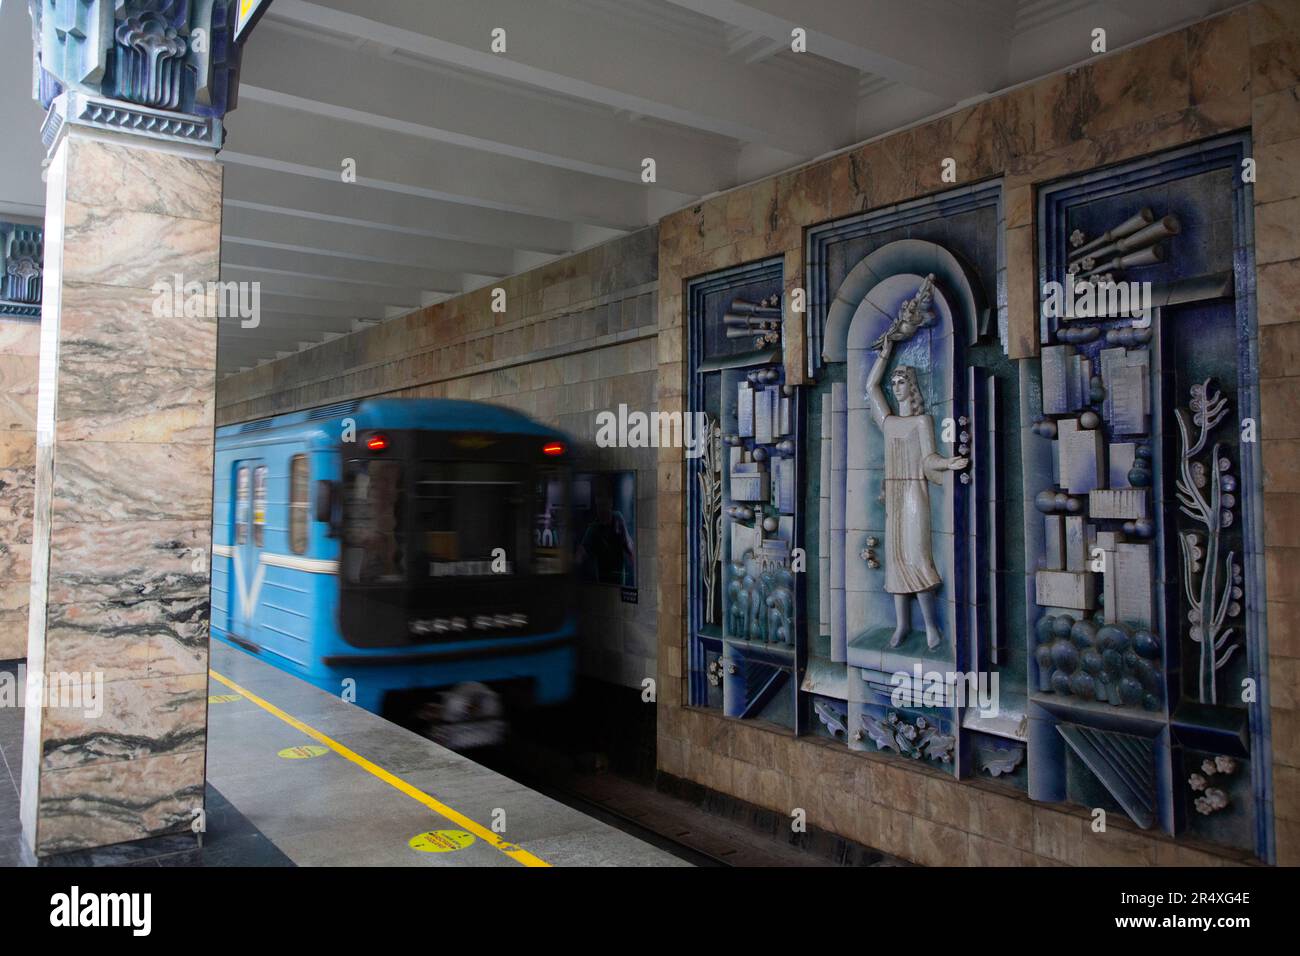 Train se déplace sur les voies devant des œuvres d'art sur les murs décorés de la gare de Toshkent pour le métro de Tachkent en Ouzbékistan ; Tachkent, Ouzbékistan Banque D'Images